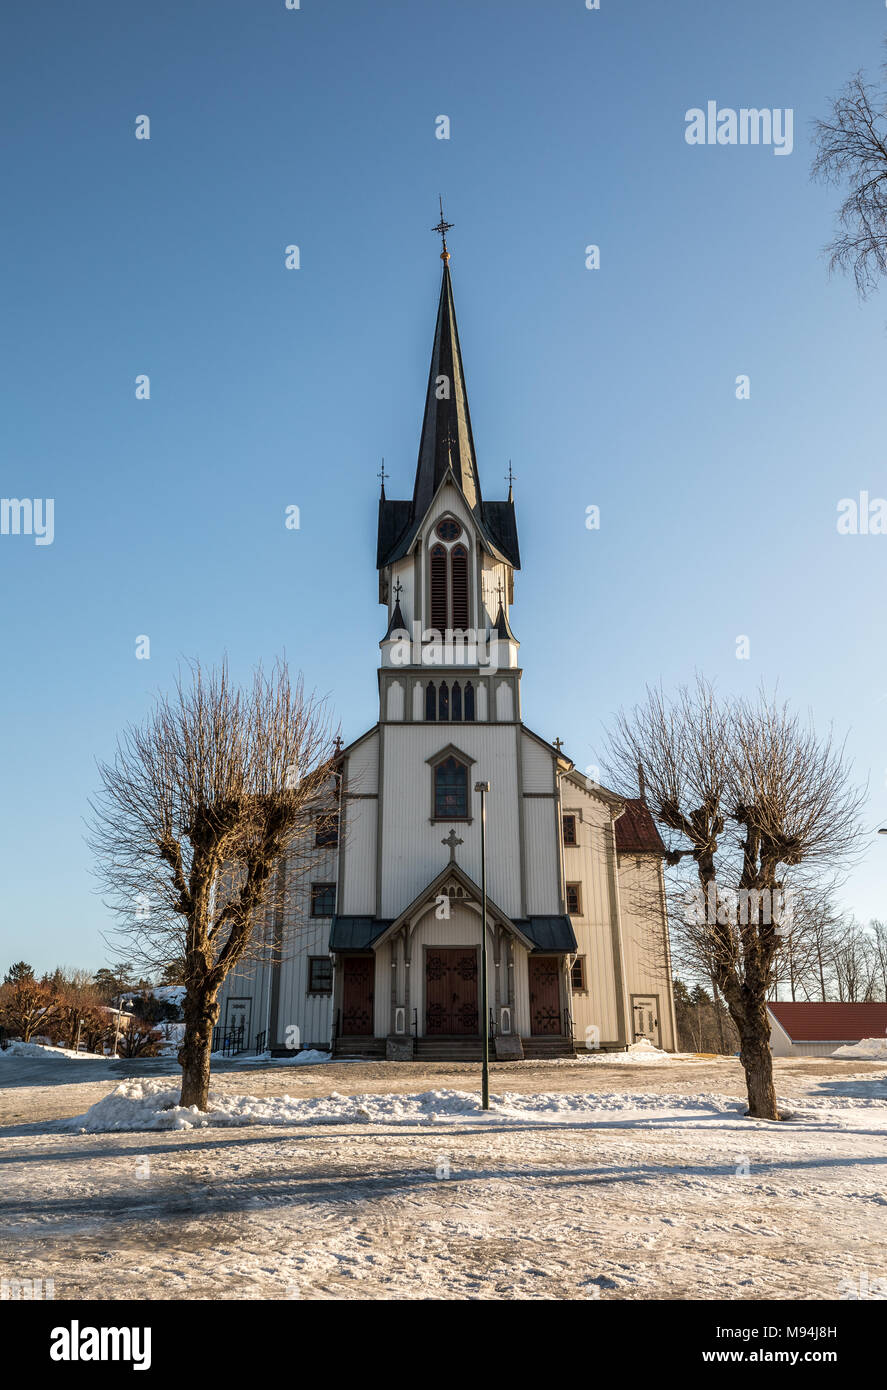 Église Bamble, grande église en bois buildt en 1845. L'hiver, la neige, ciel bleu. Vue de face. Vertical image. Banque D'Images